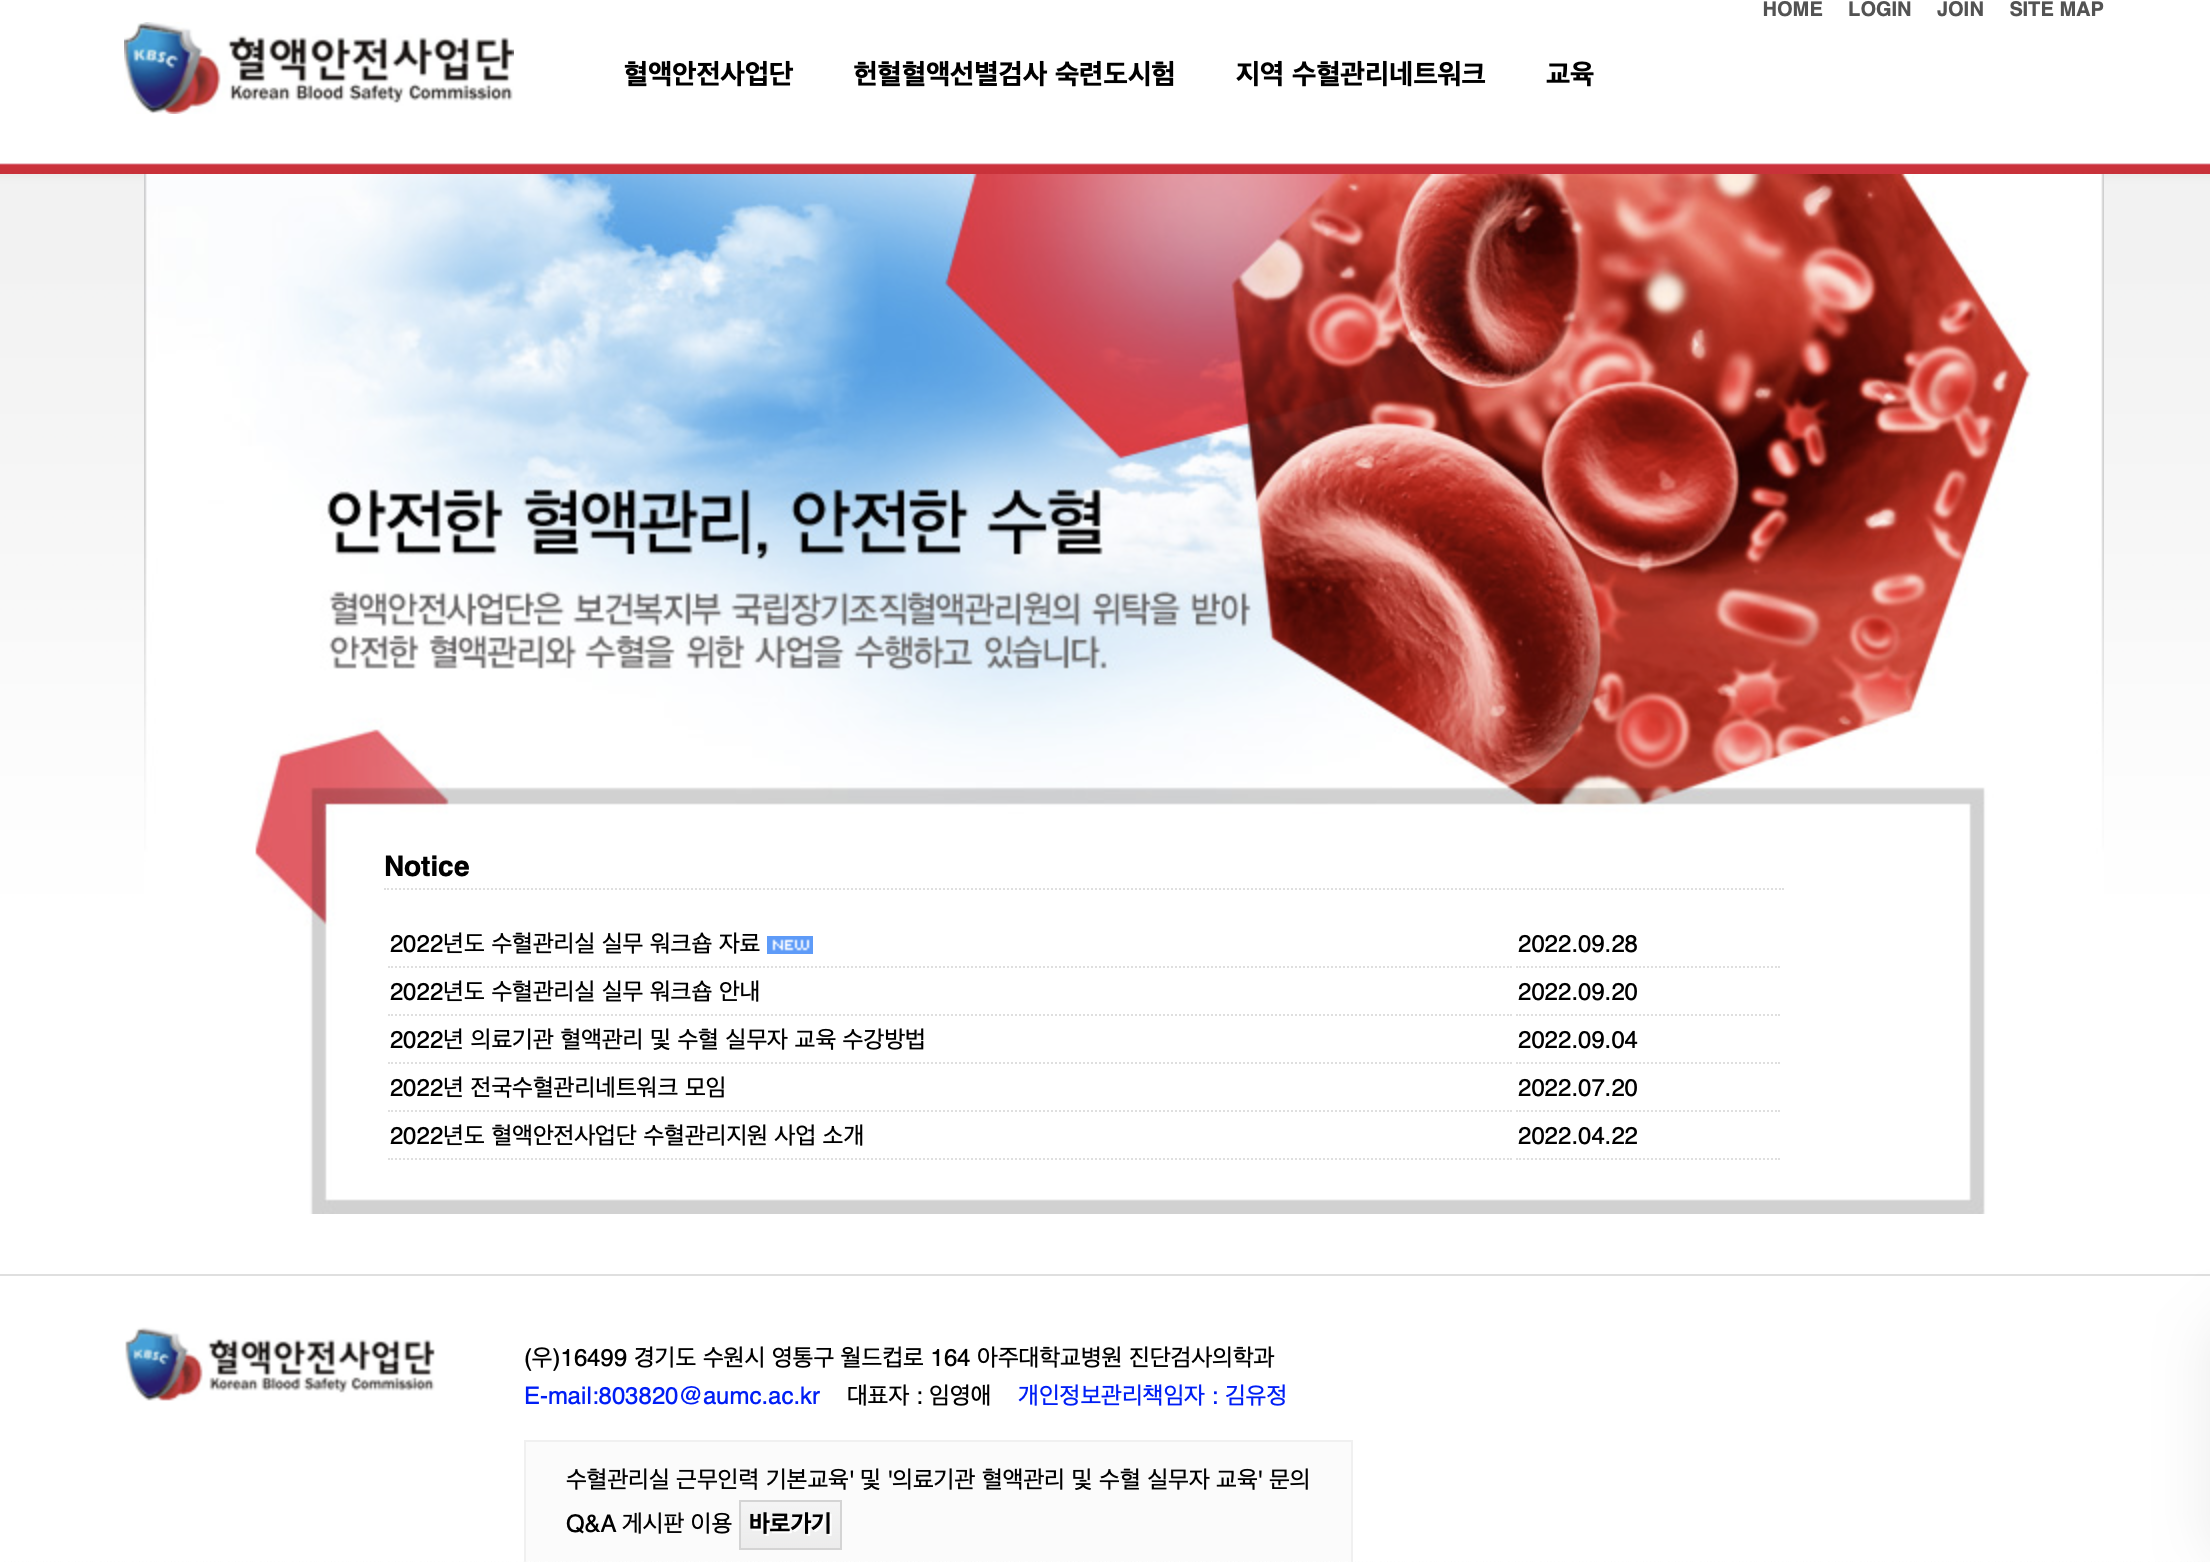 2022년 수혈관리실 근무인력 기본교육 / 의료기관 혈액관리 및 수혈 실무자 교육